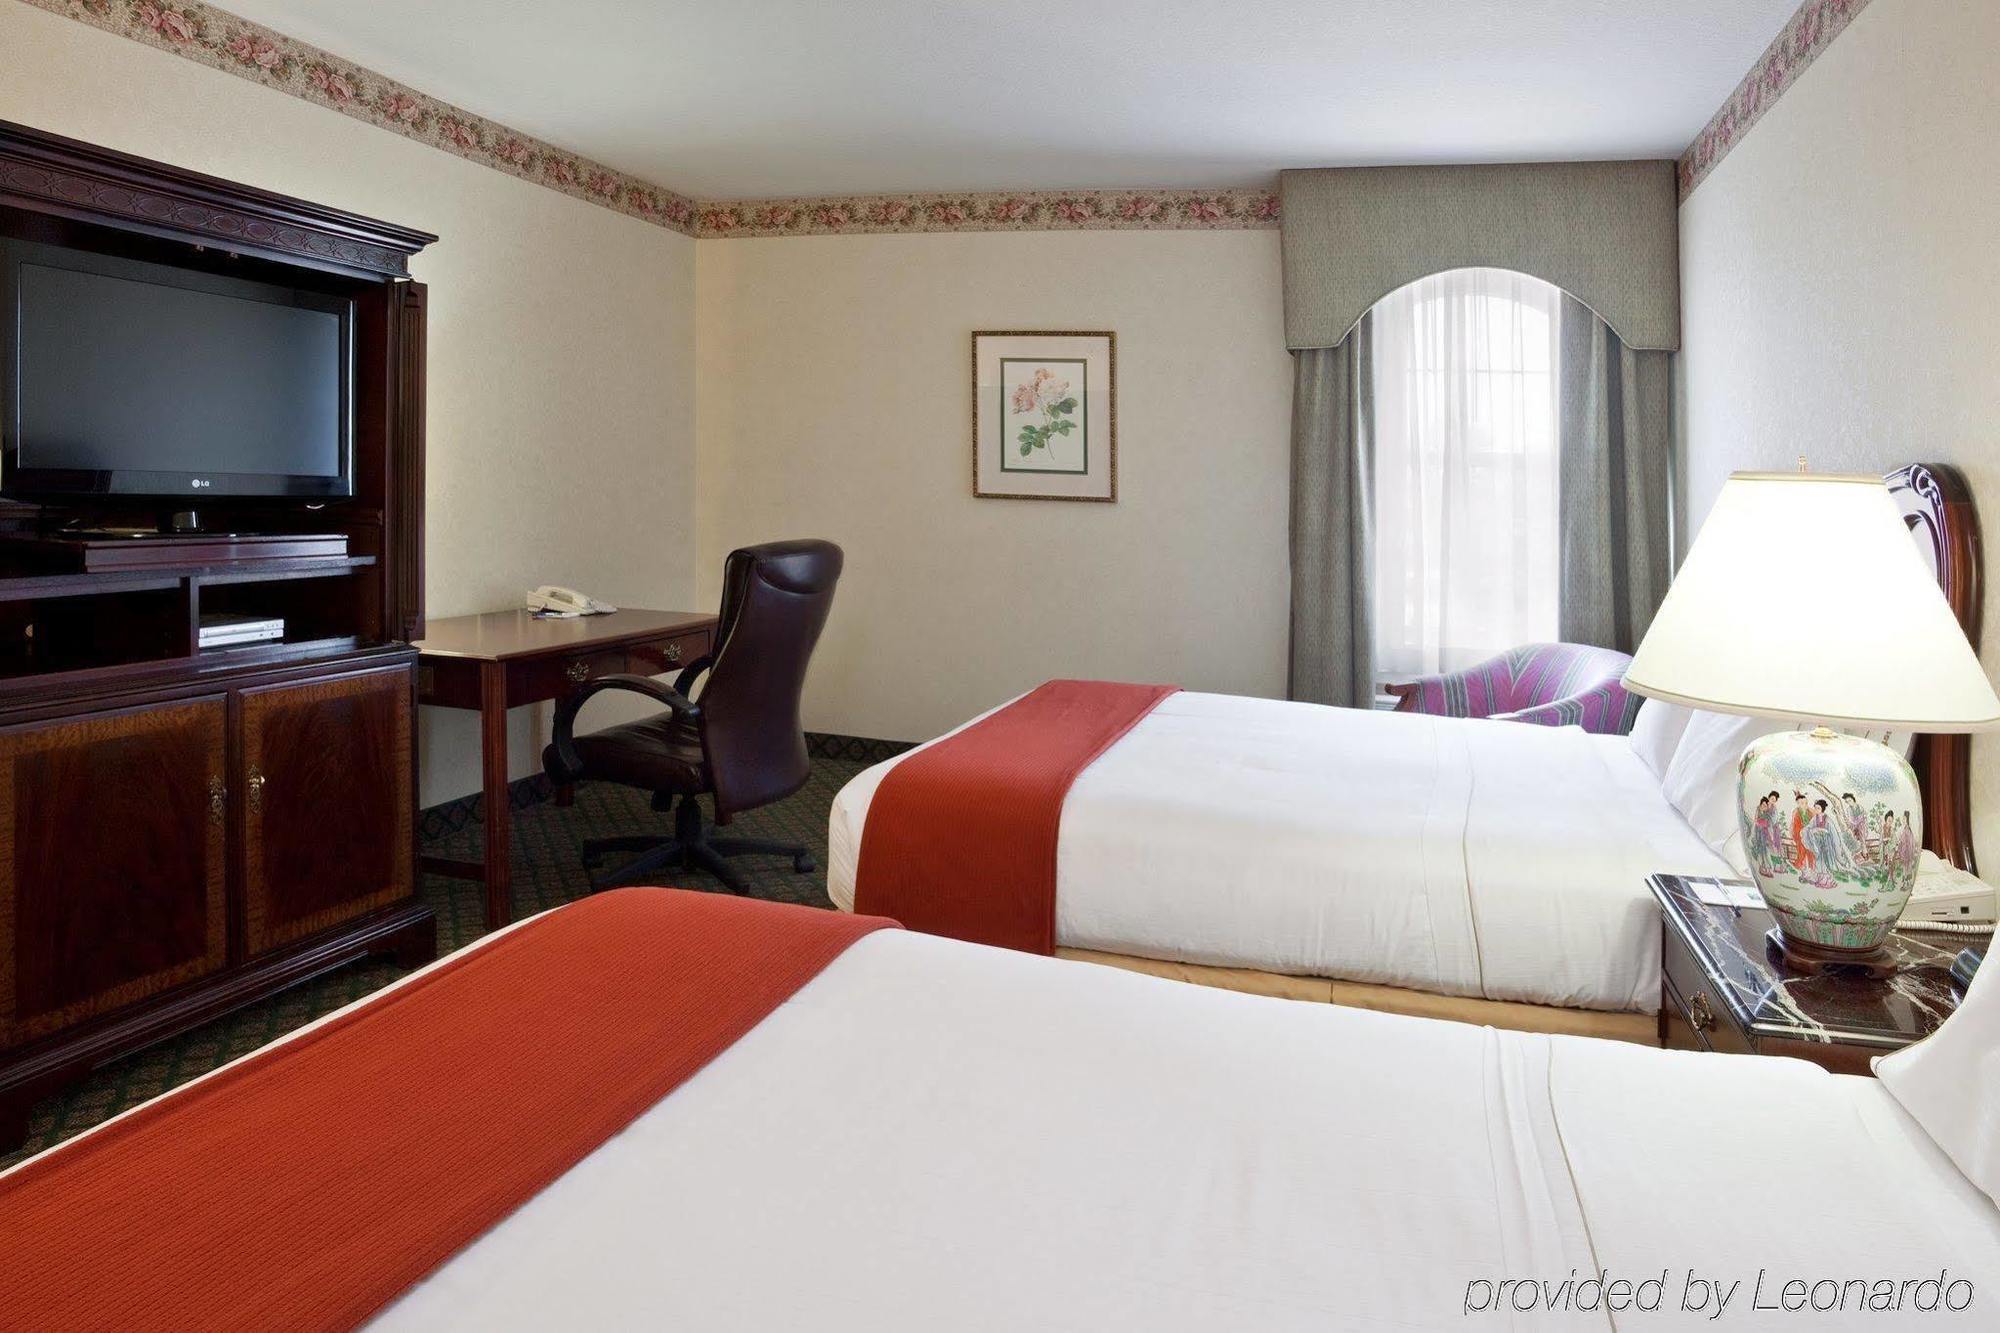 Comfort Inn & Suites Allen Park/Dearborn Room photo